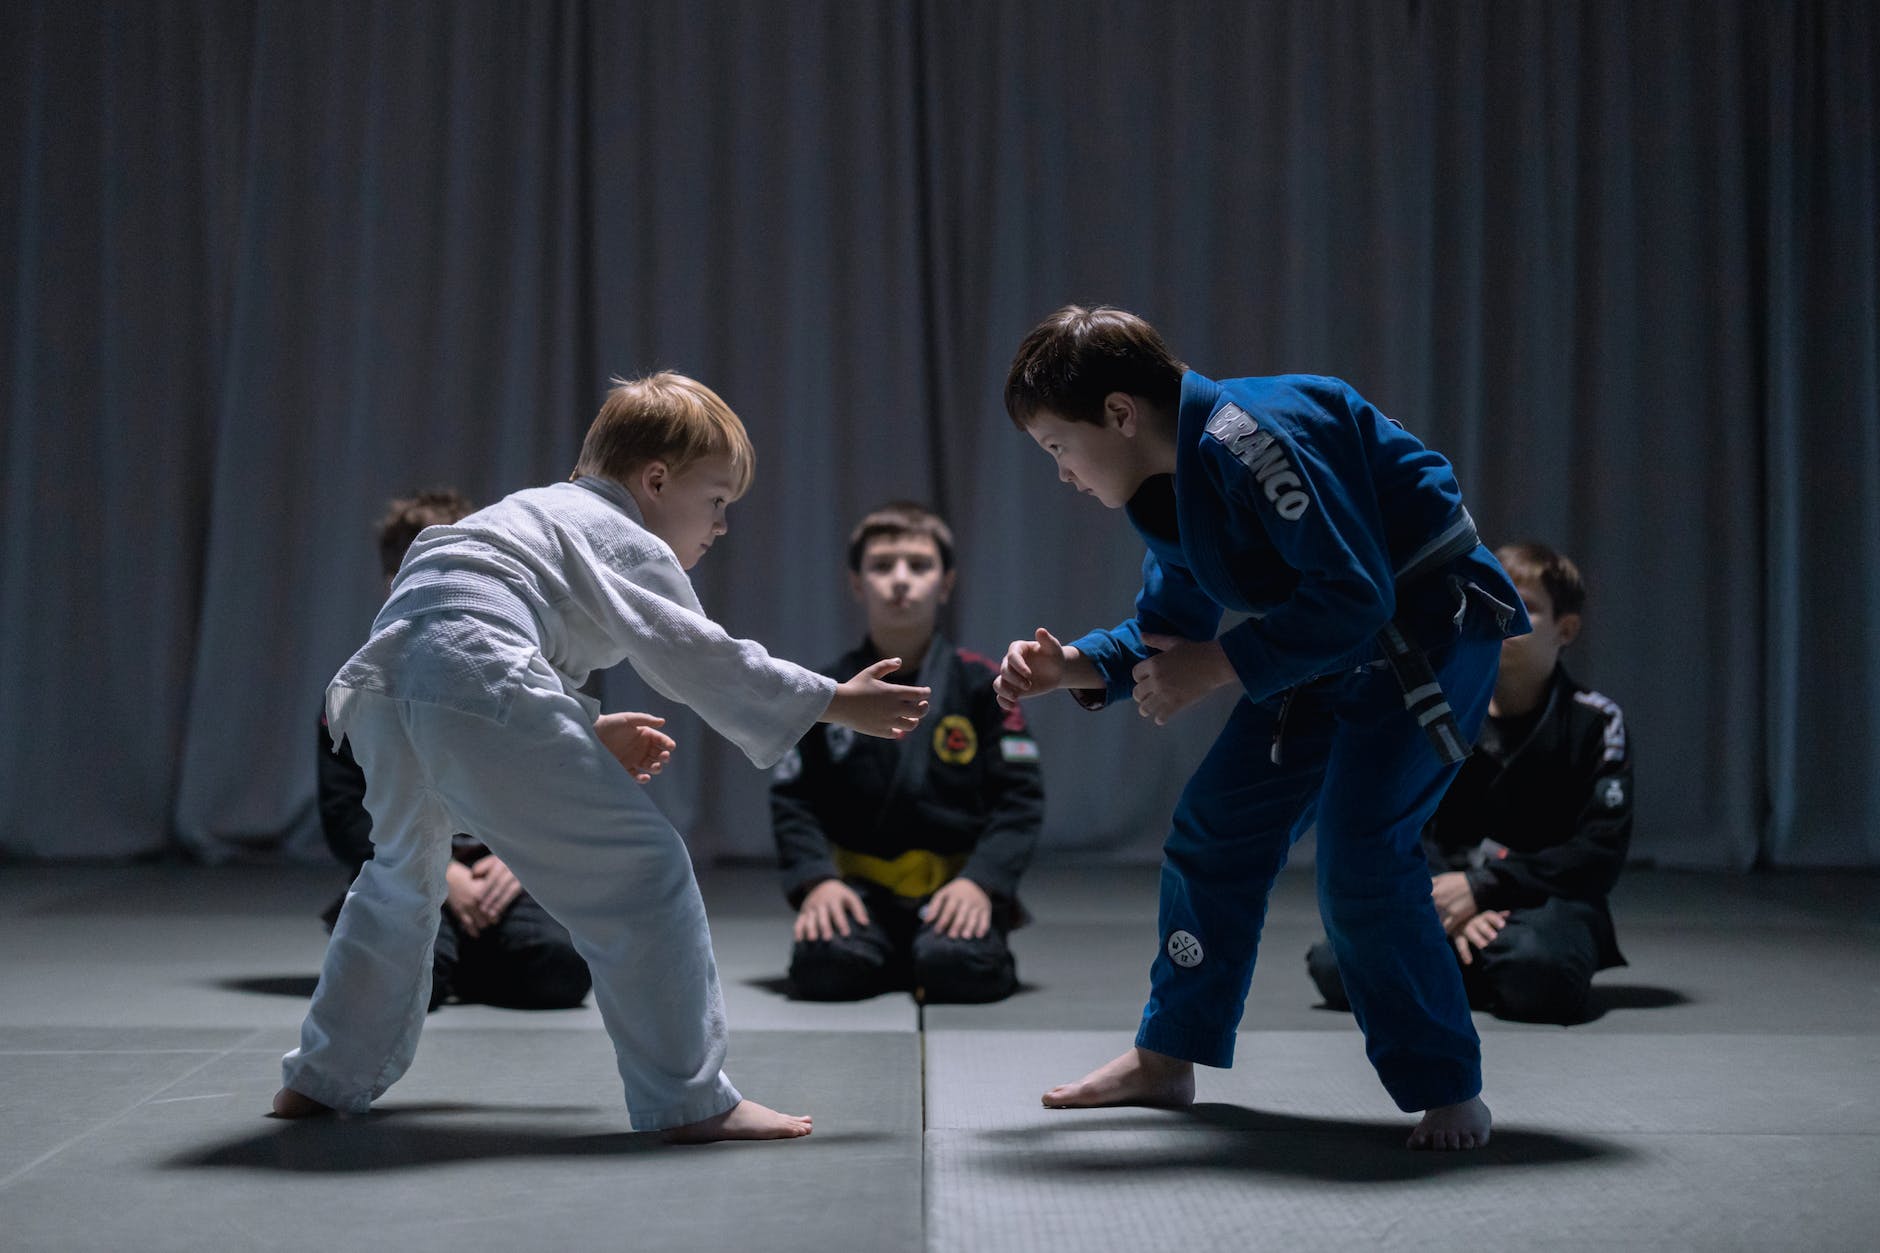 kids practicing martial arts - disciplina
